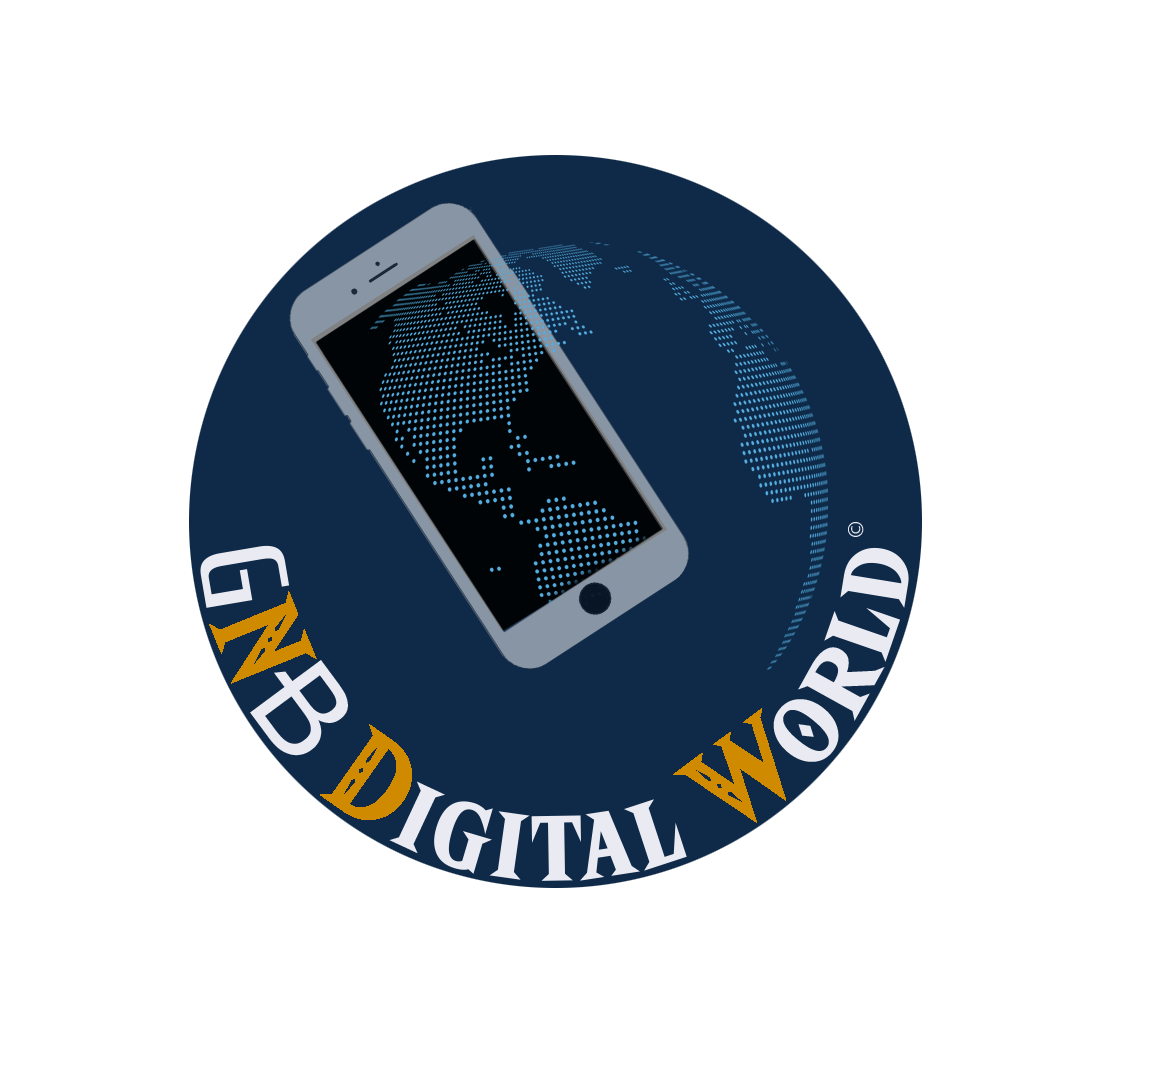 Logo gnb digital world